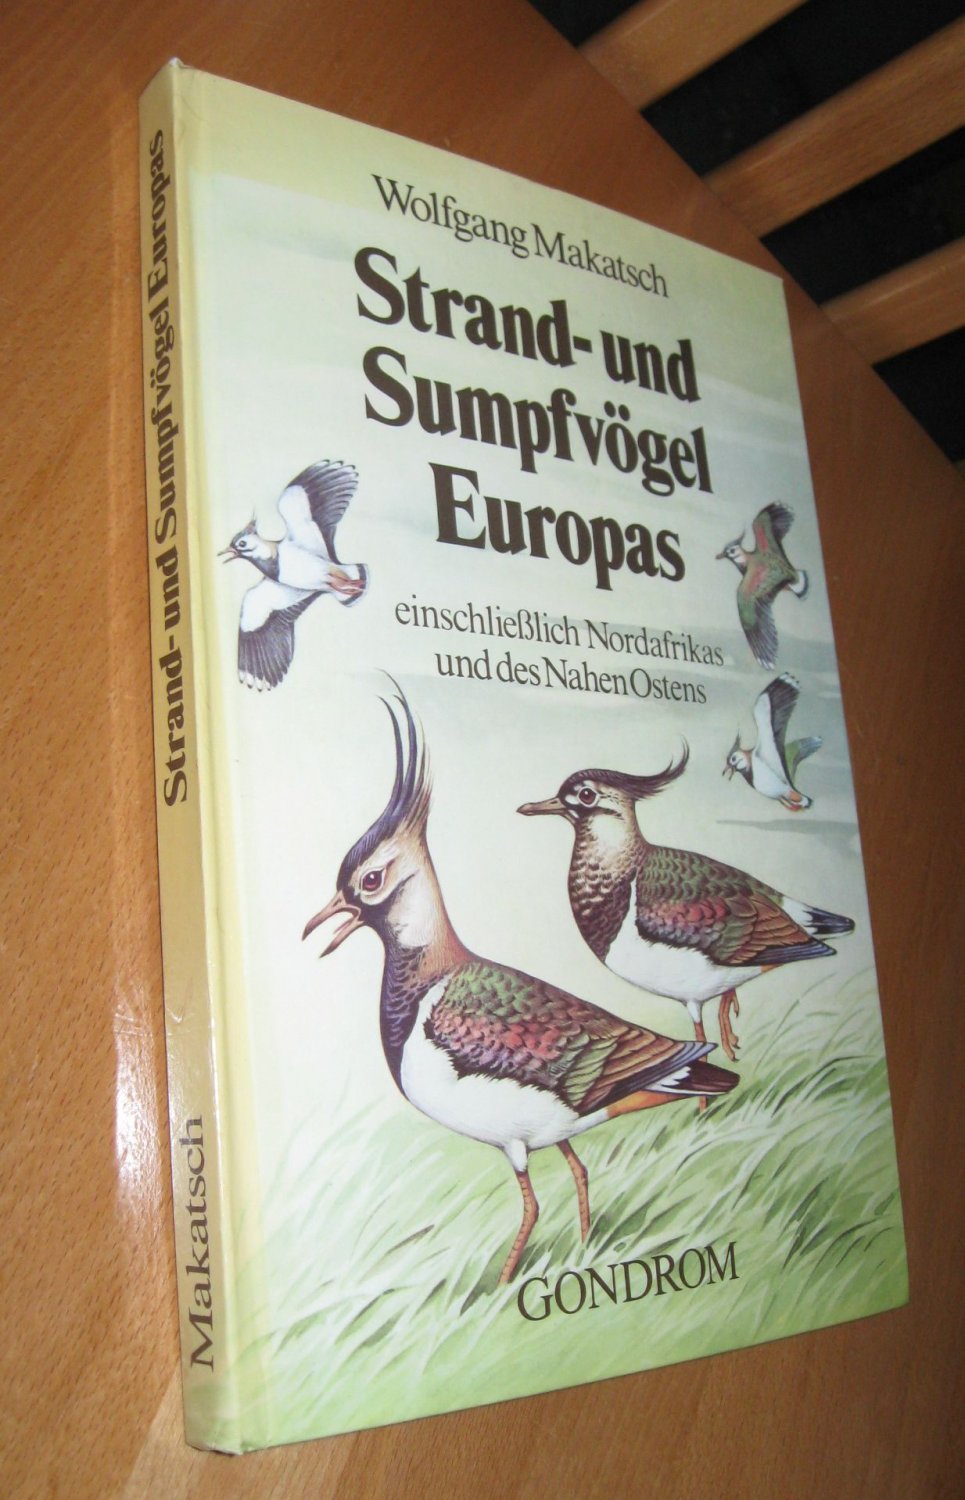 Strand- und Sumpfvögel Europas (einschliesslich Nordafrikas und des Nahen Ostens) - Wolfgang Makatsch